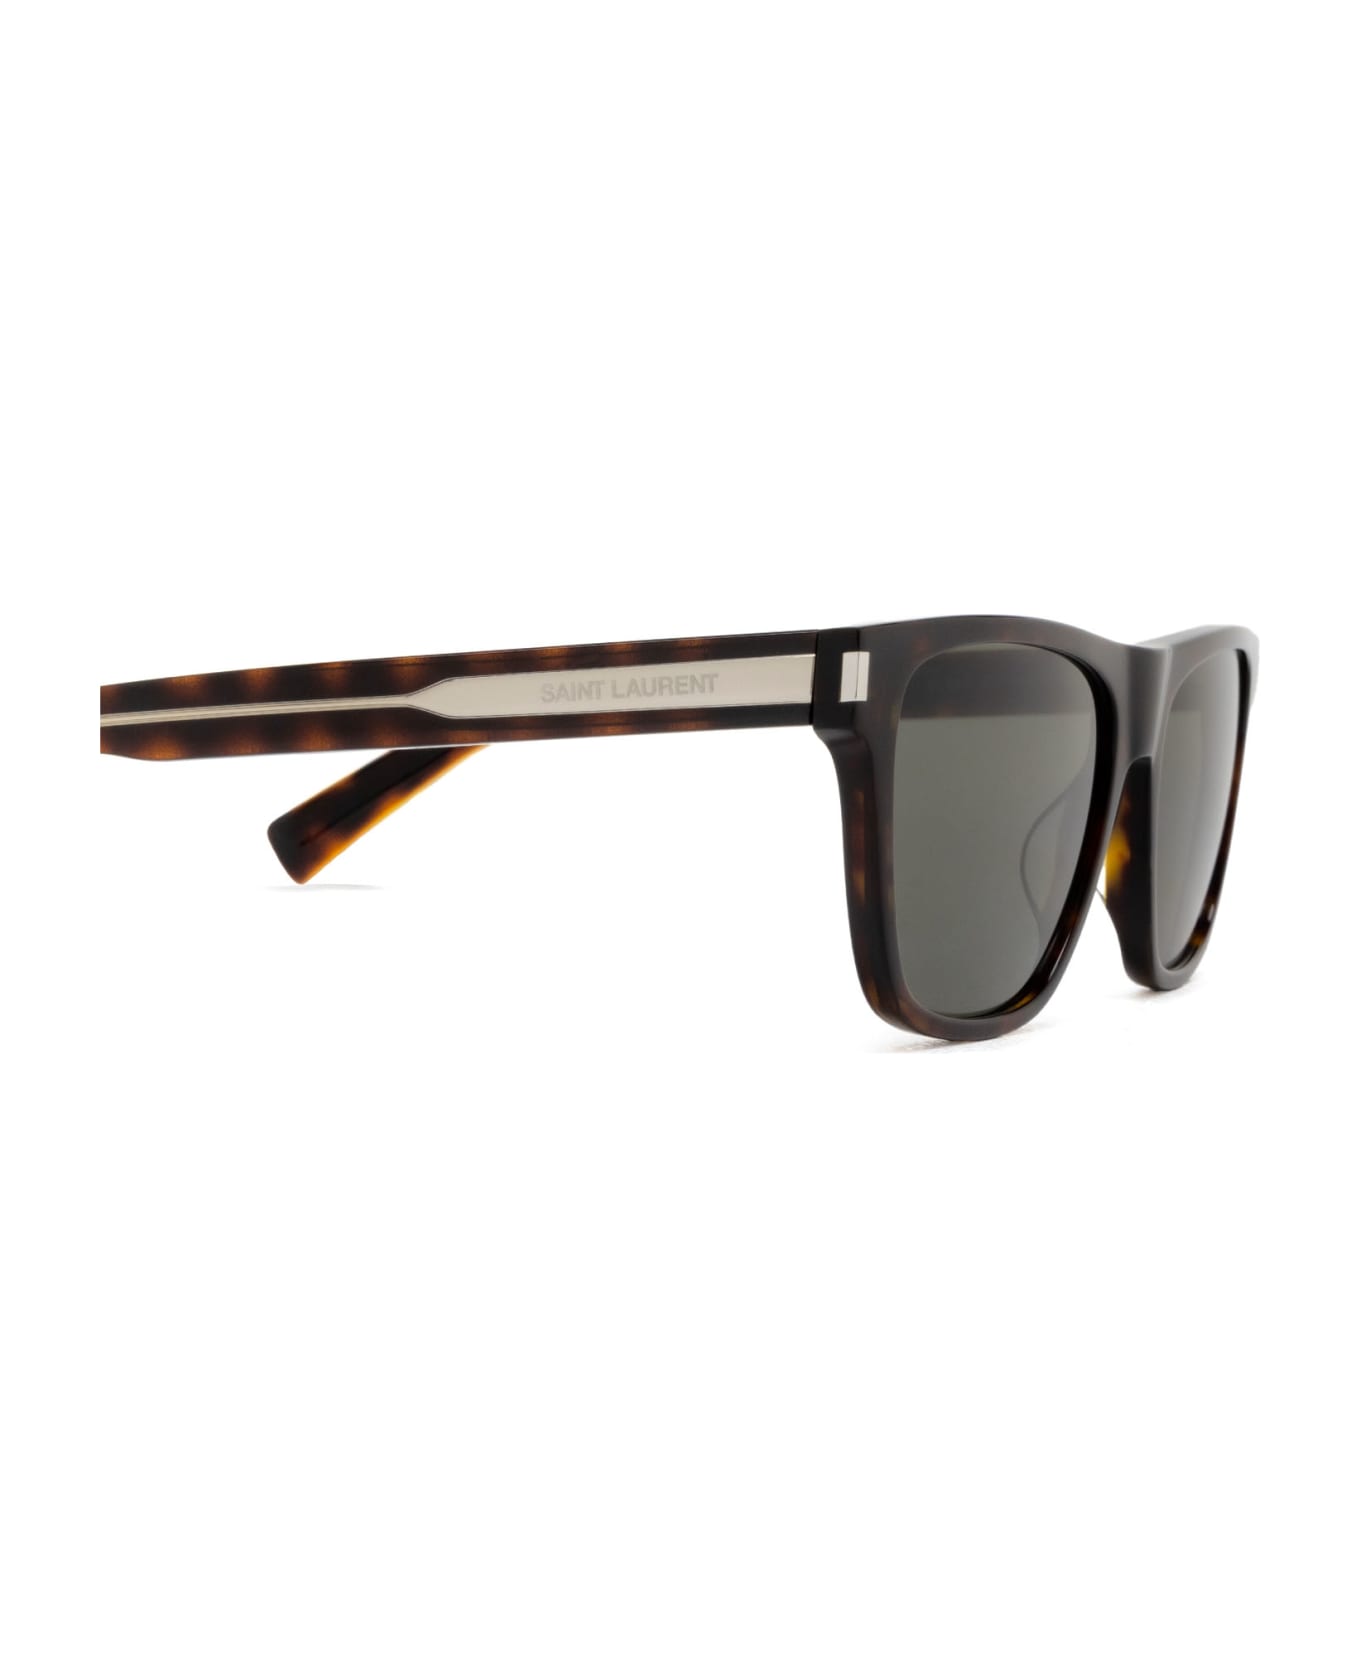 Saint Laurent Eyewear Sl 619 Havana Sunglasses - Havana